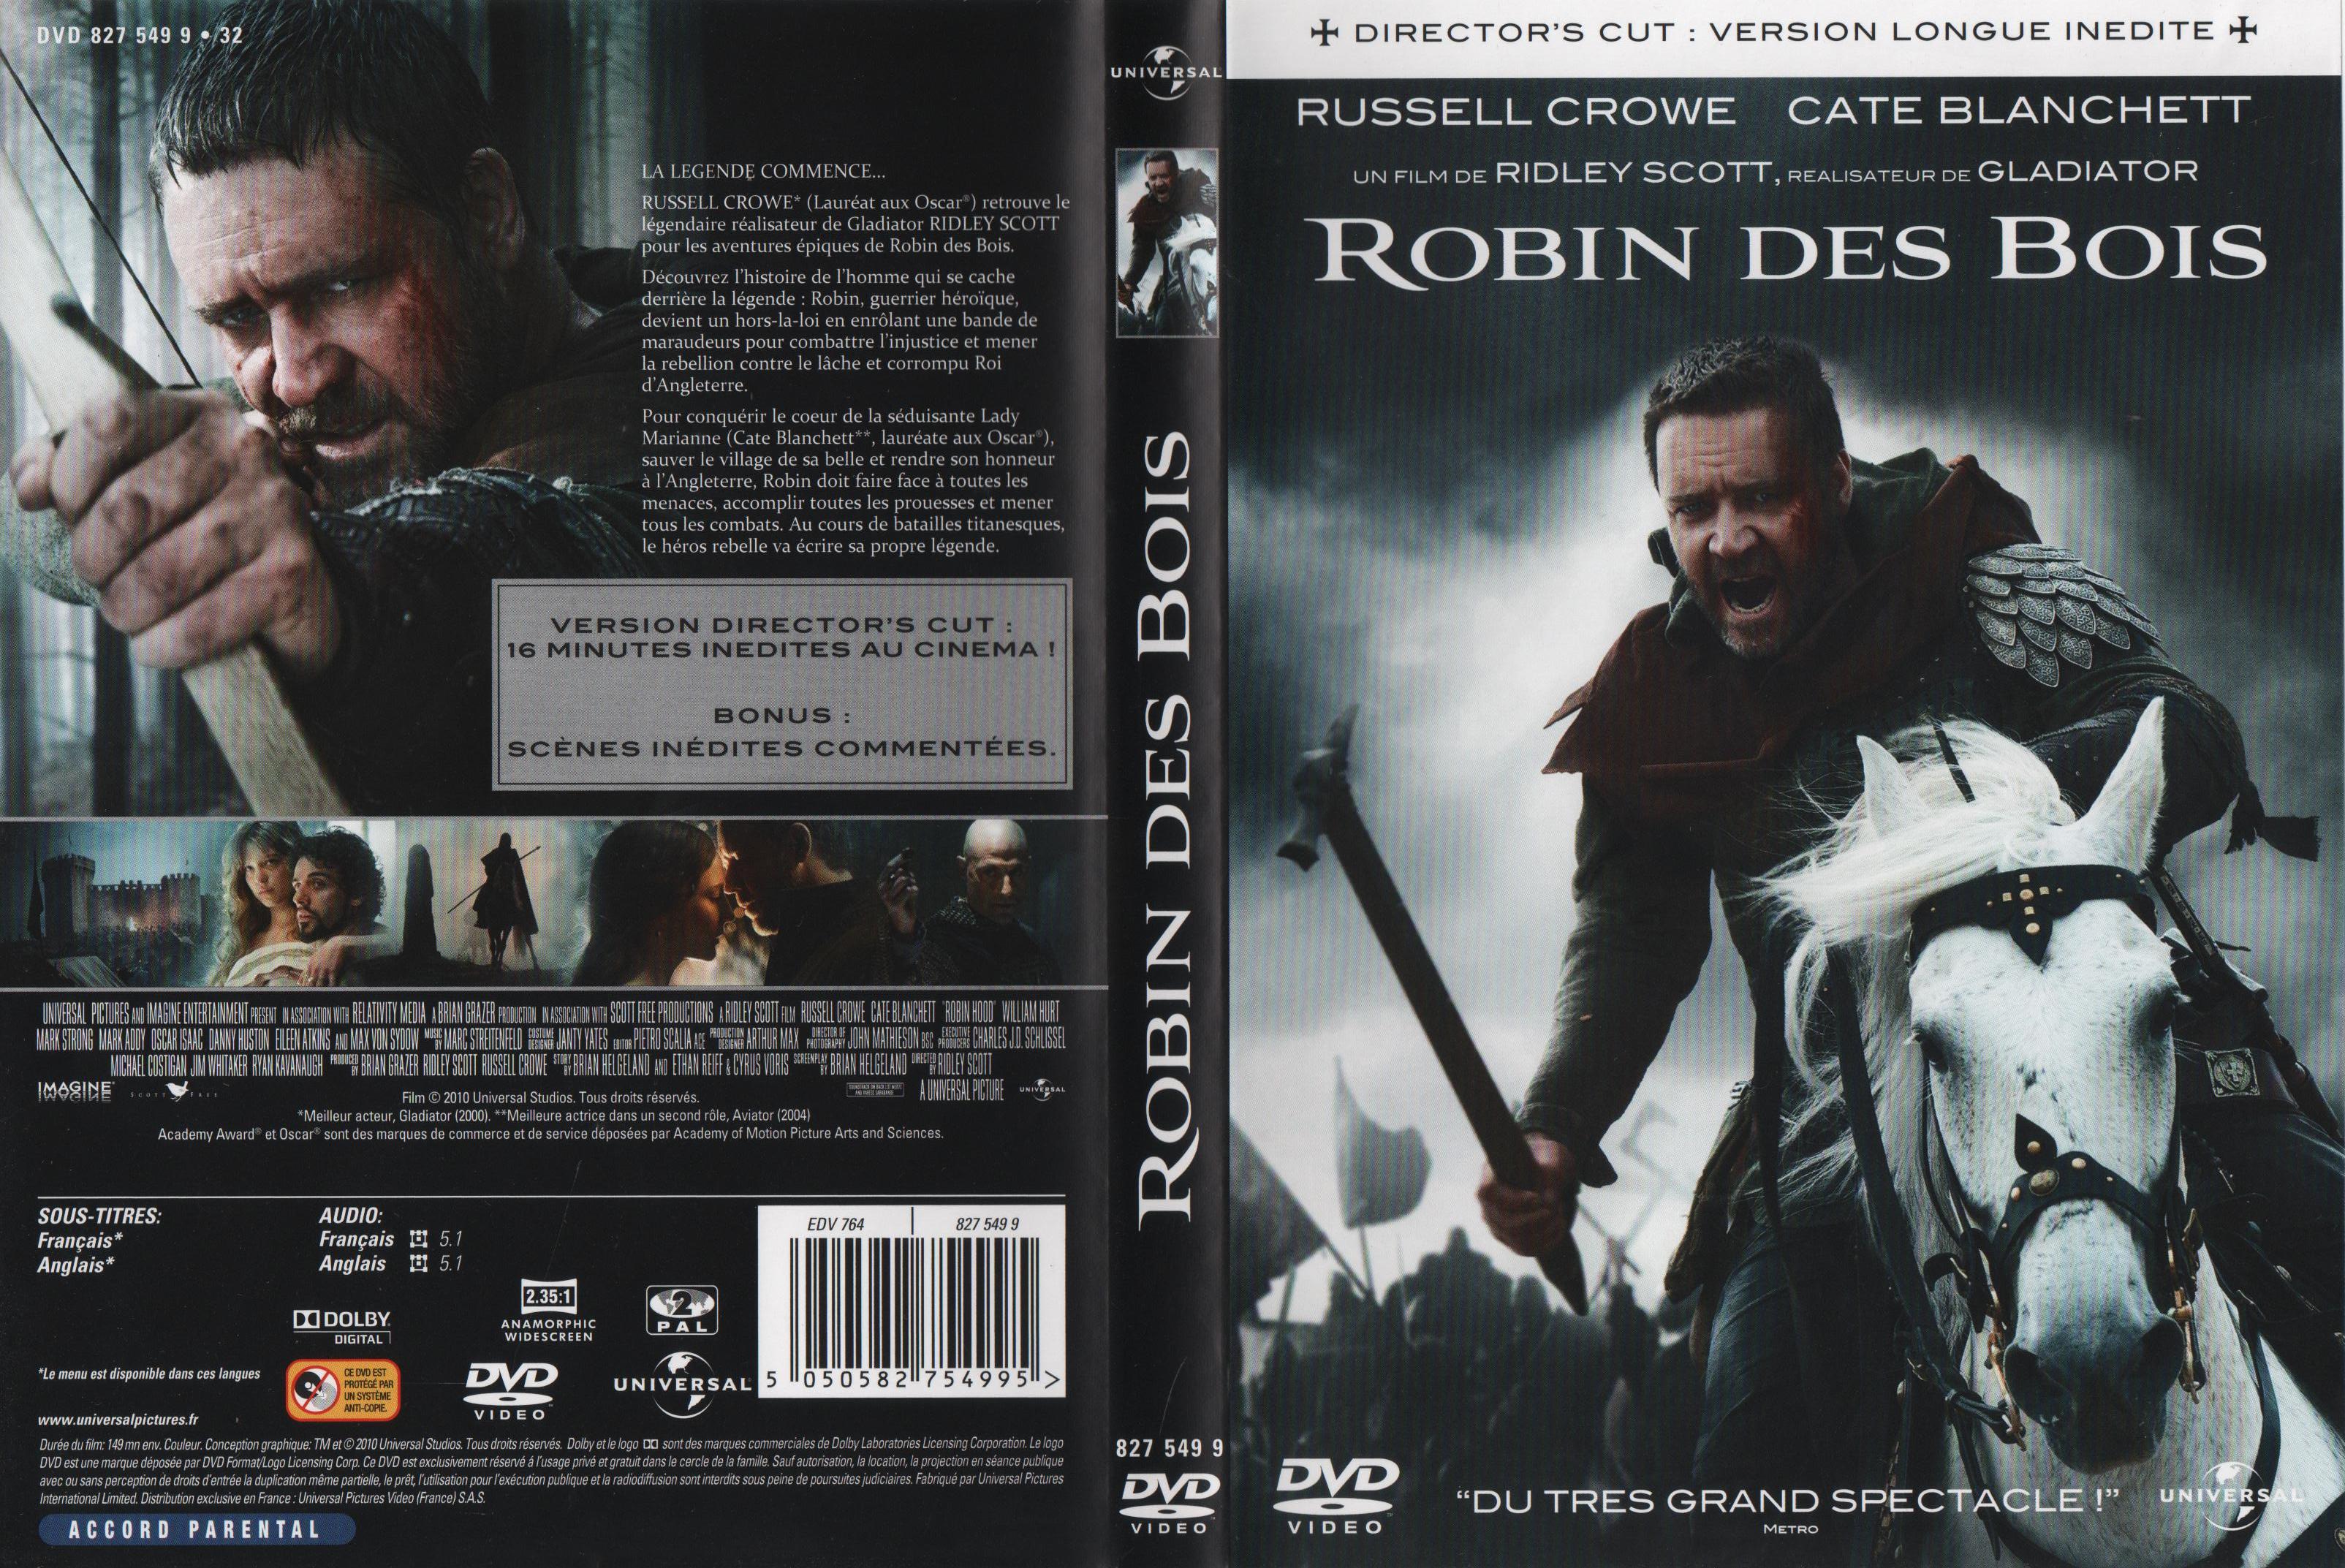 Jaquette DVD Robin des bois (2010) v2